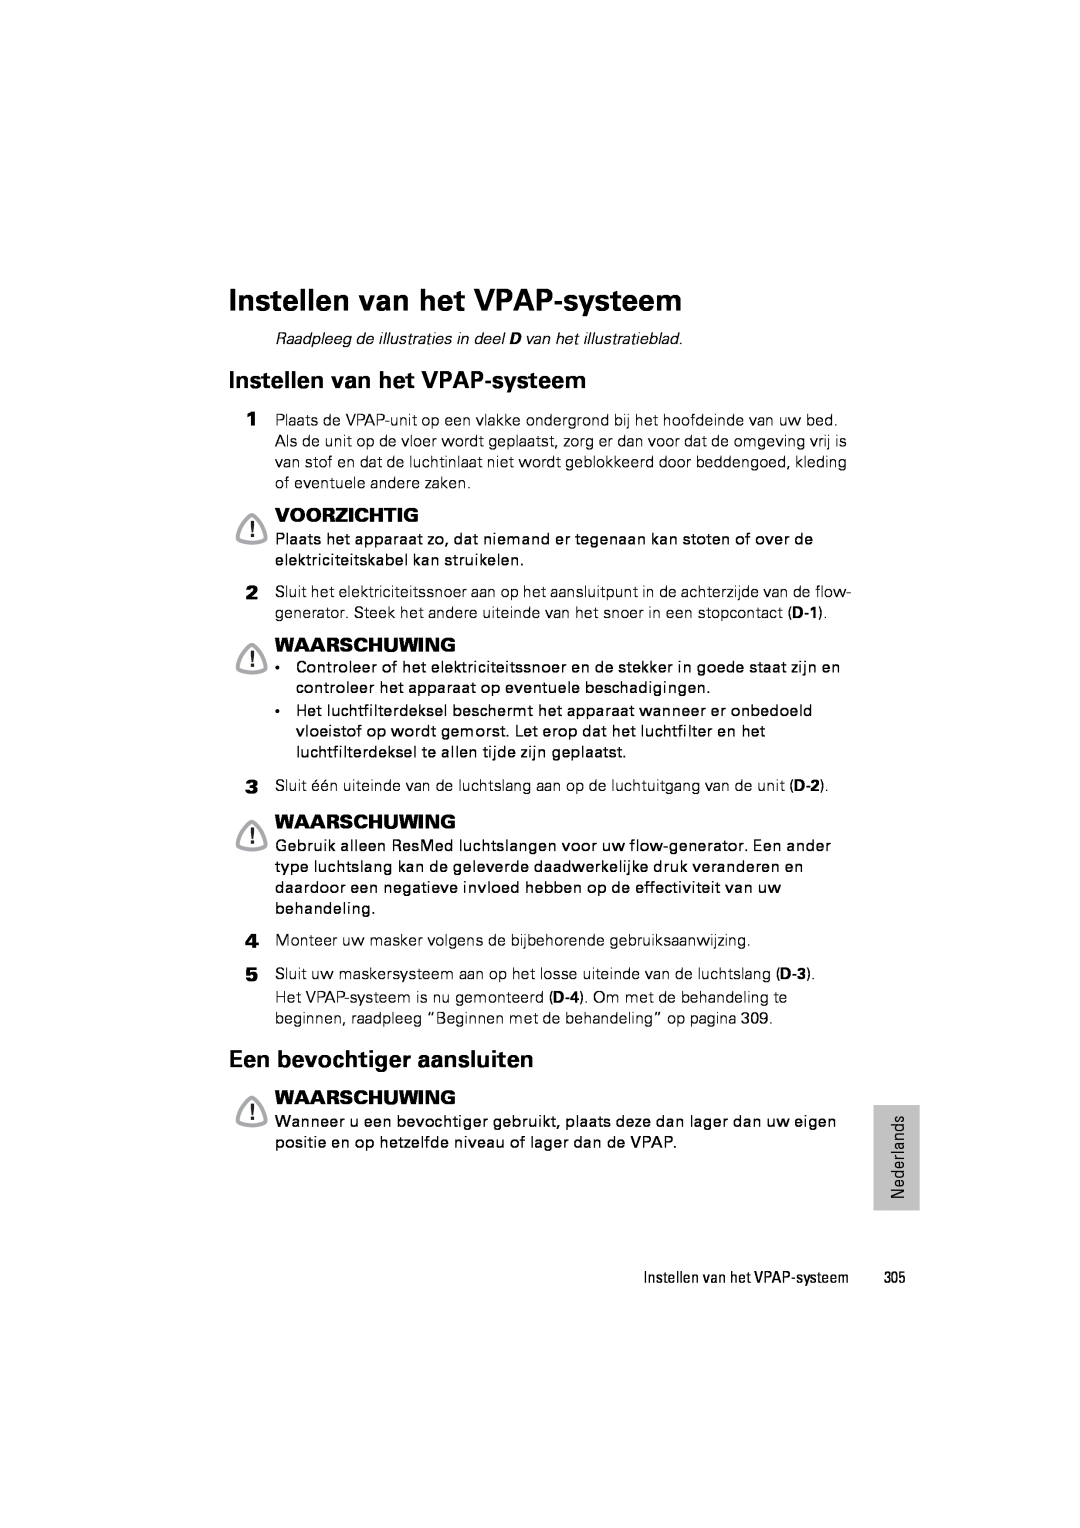 ResMed III & III ST user manual Instellen van het VPAP-systeem, Een bevochtiger aansluiten, Voorzichtig, Waarschuwing 